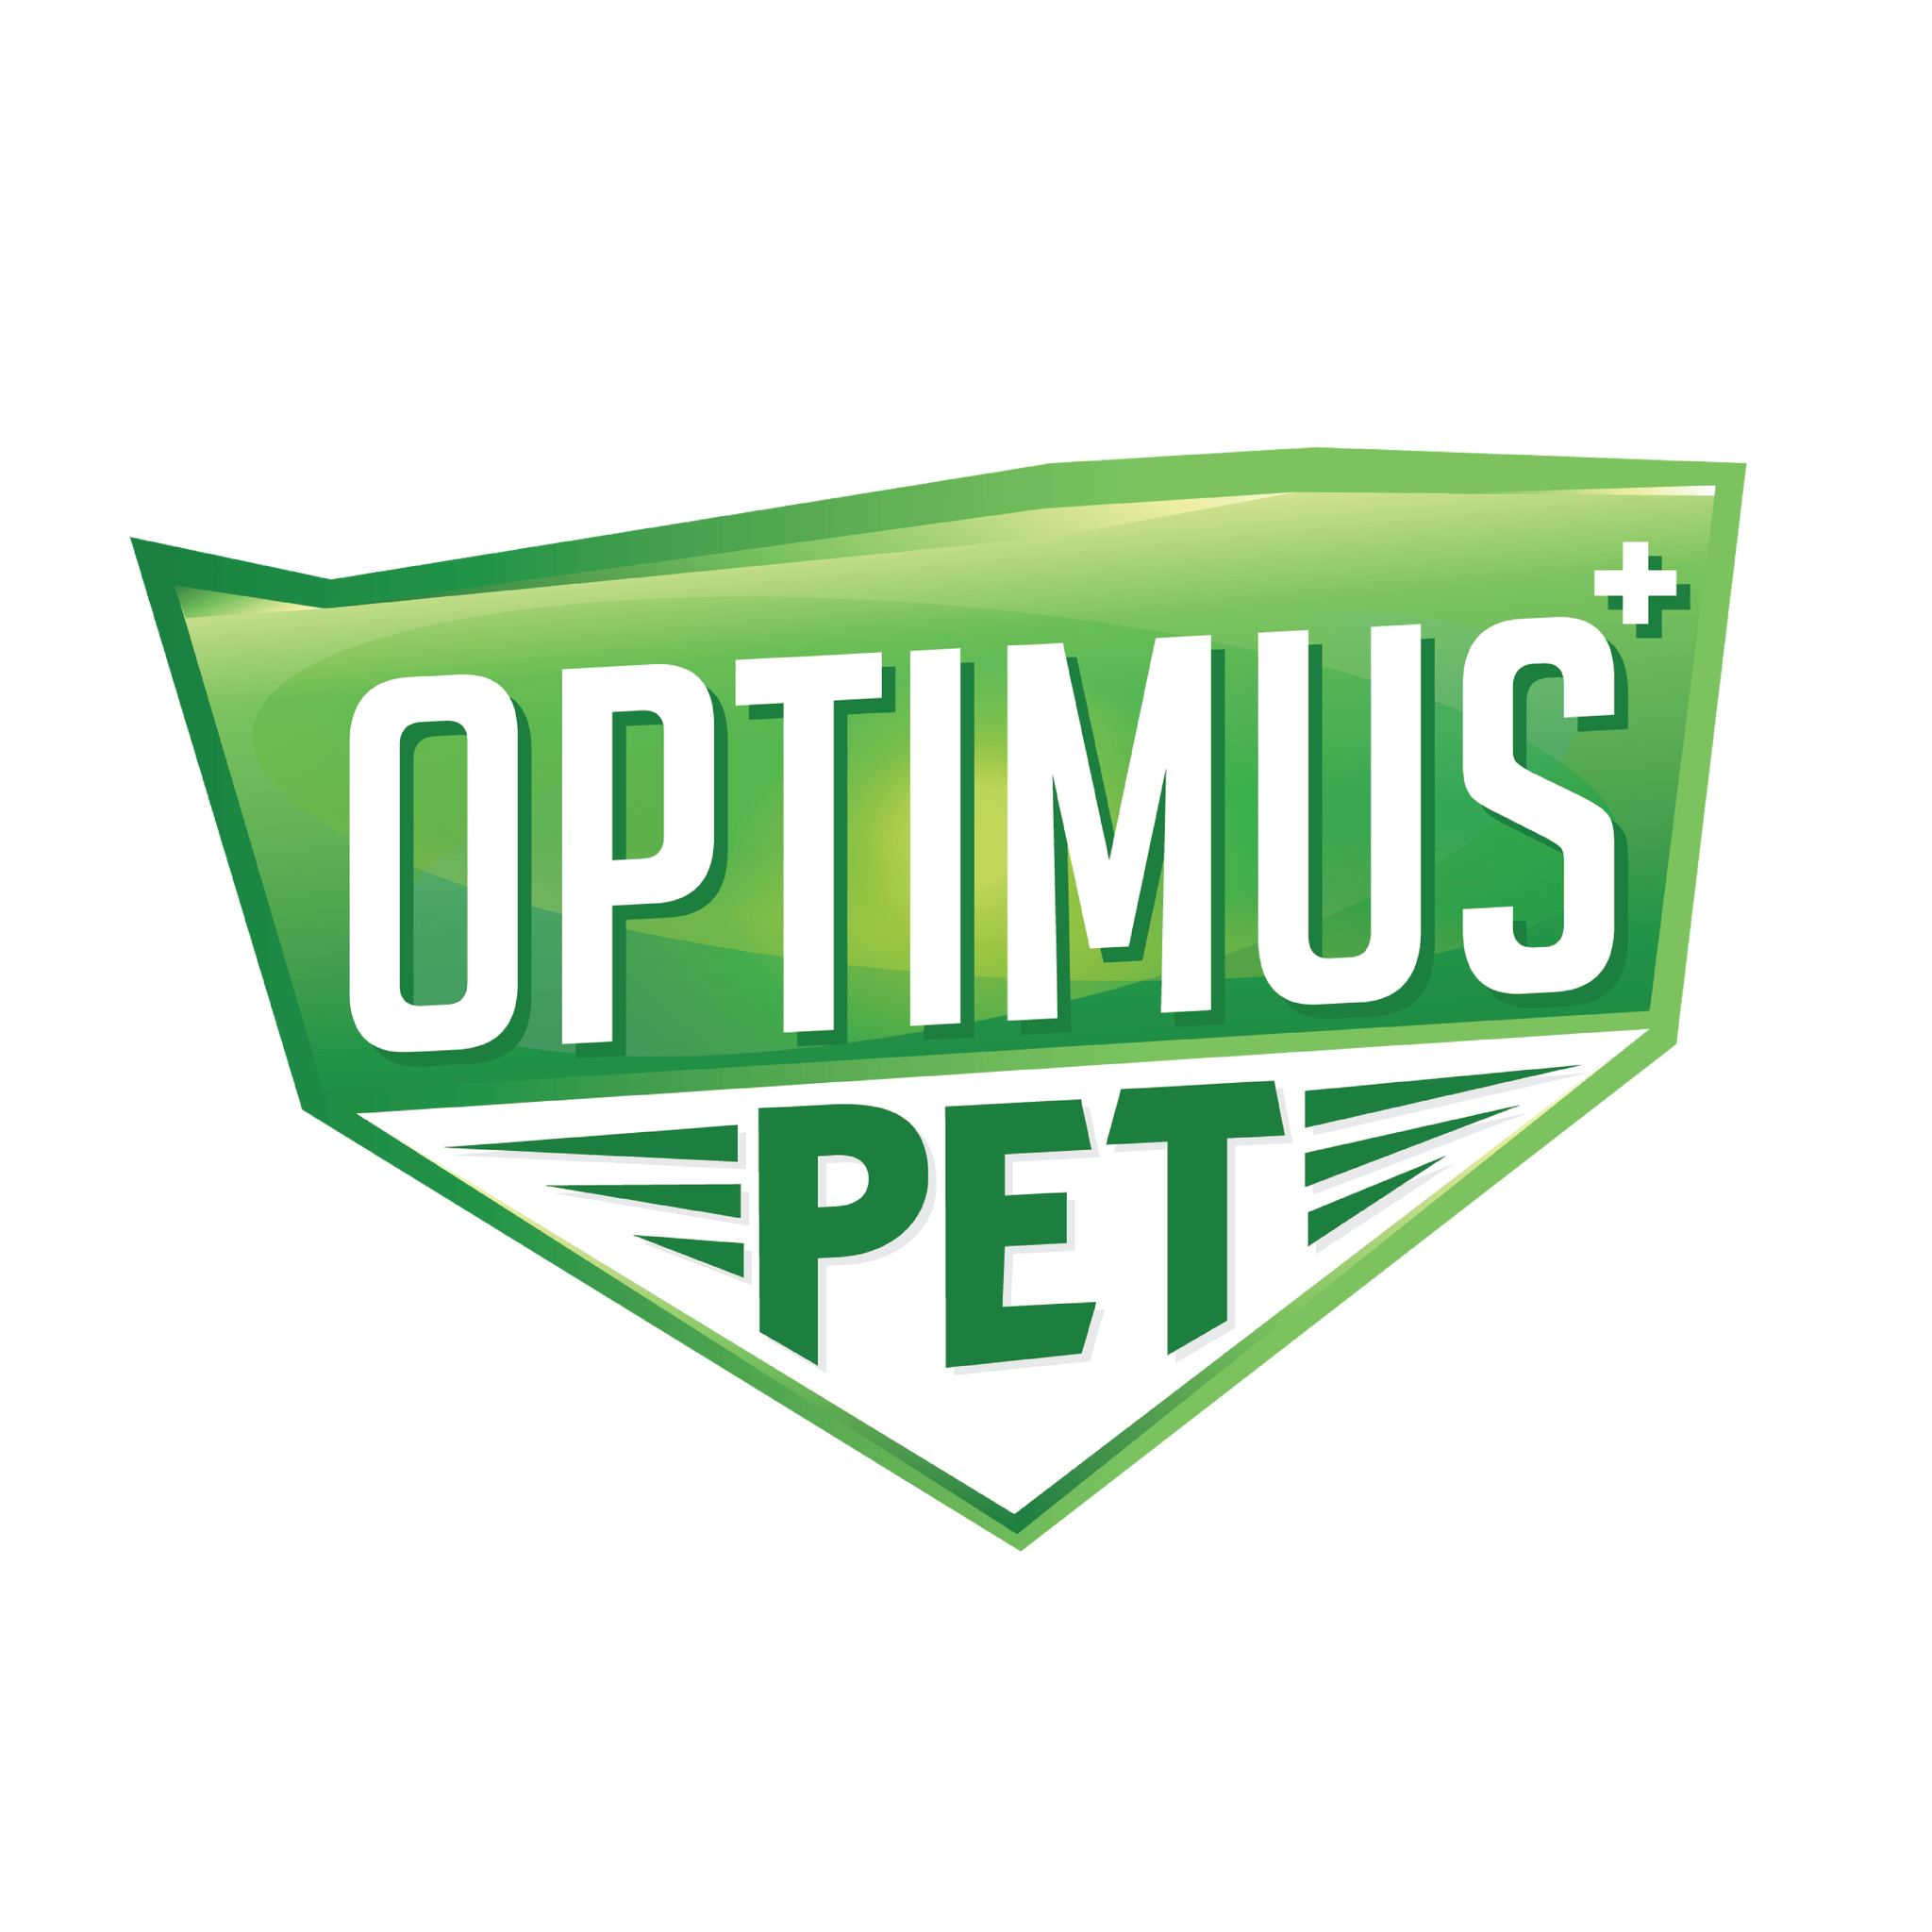 Optimus Pet